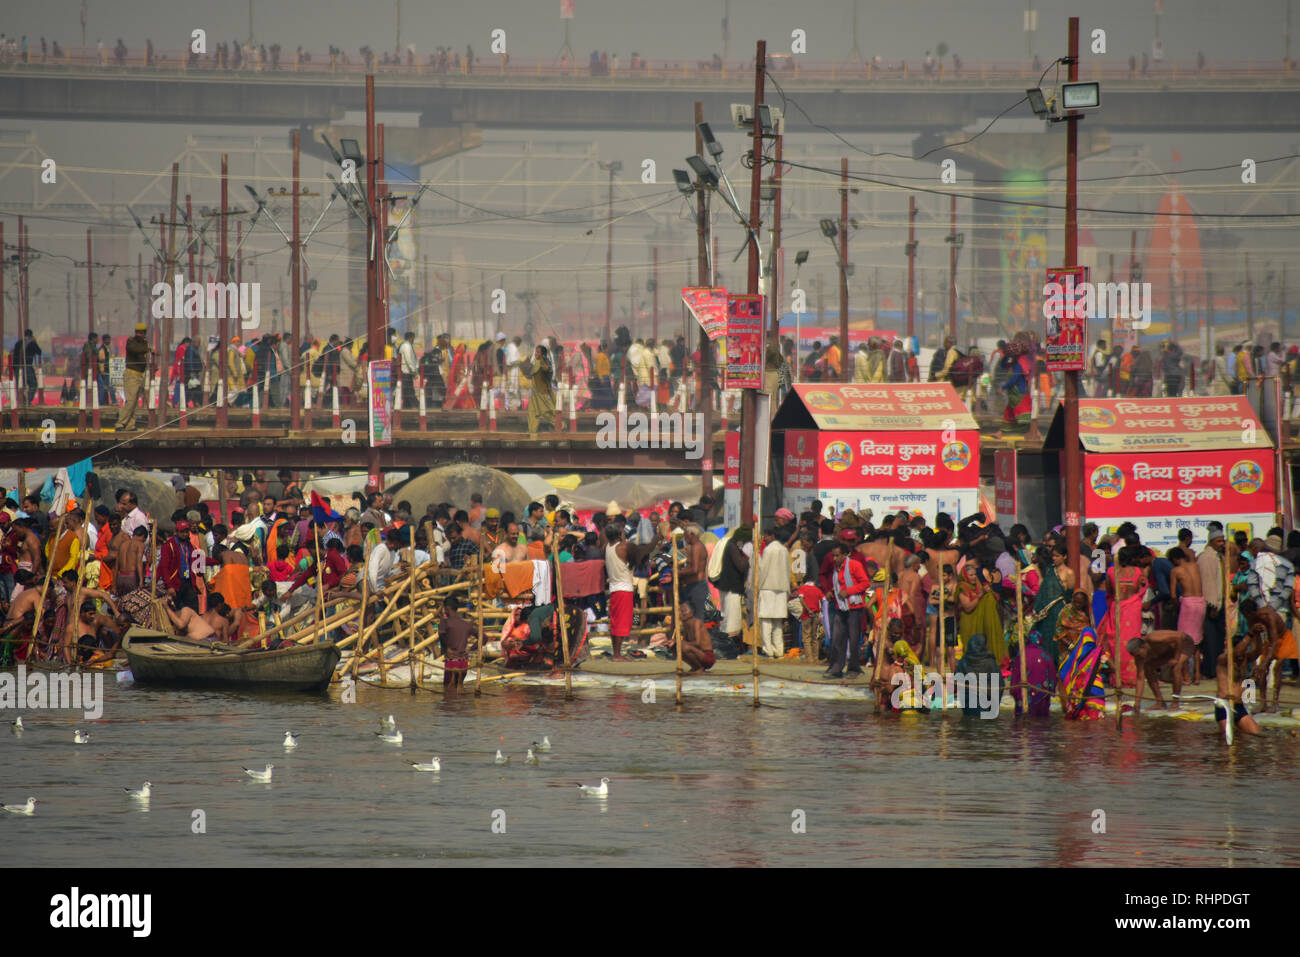 Pilger gesehen gehen auf die provisorische Brücke während der Wallfahrt. Kumbh Mela, einer der größten Gemeinde des Menschen auf der Erde. 3 crore Leute werden erwartet am Tag der zweiten Shahi Snan am 4. Februar und Arrangements sind entsprechend in Prayagraj gemacht. Stockfoto